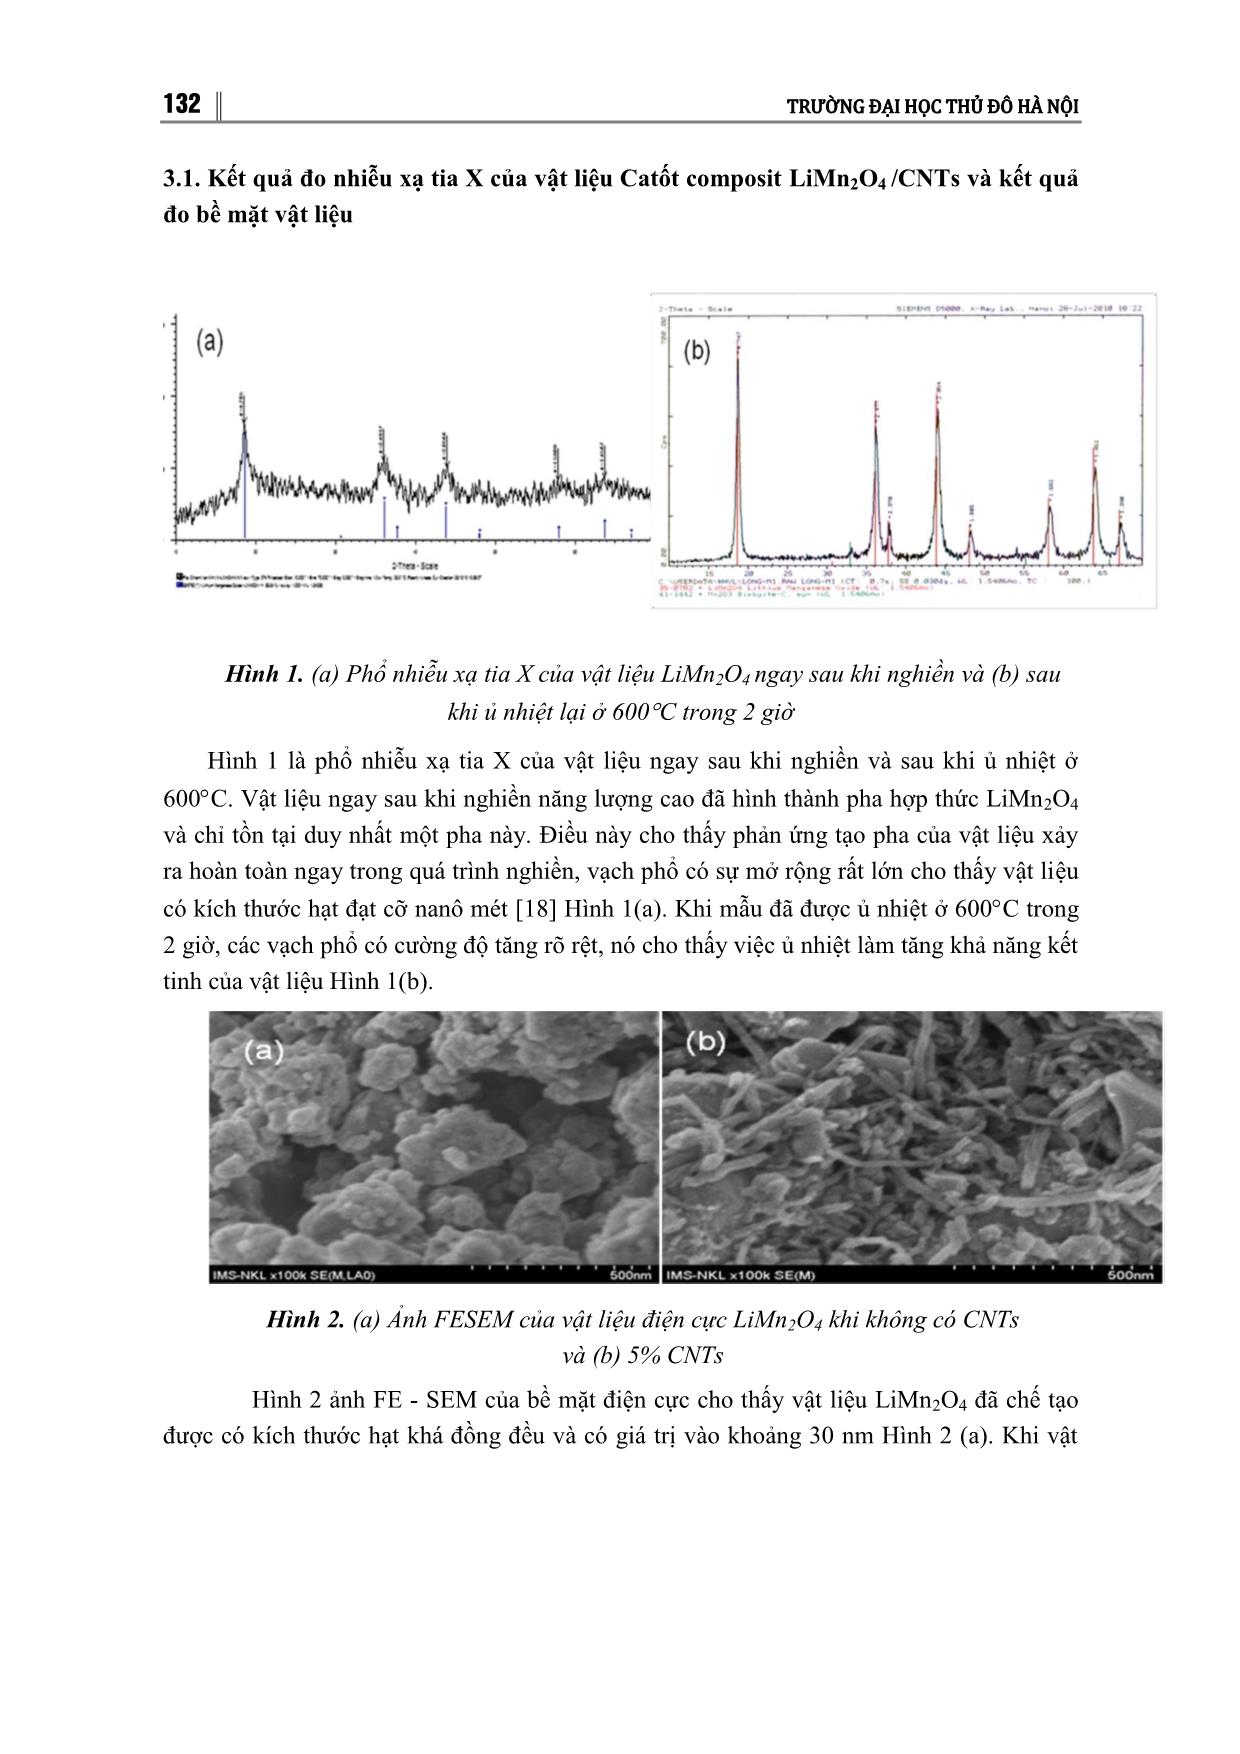 Nghiên cứu chế tạo vật liệu catot composit LIMN₂O₄/CNTˢ ứng dụng cho pin ion liti trang 3